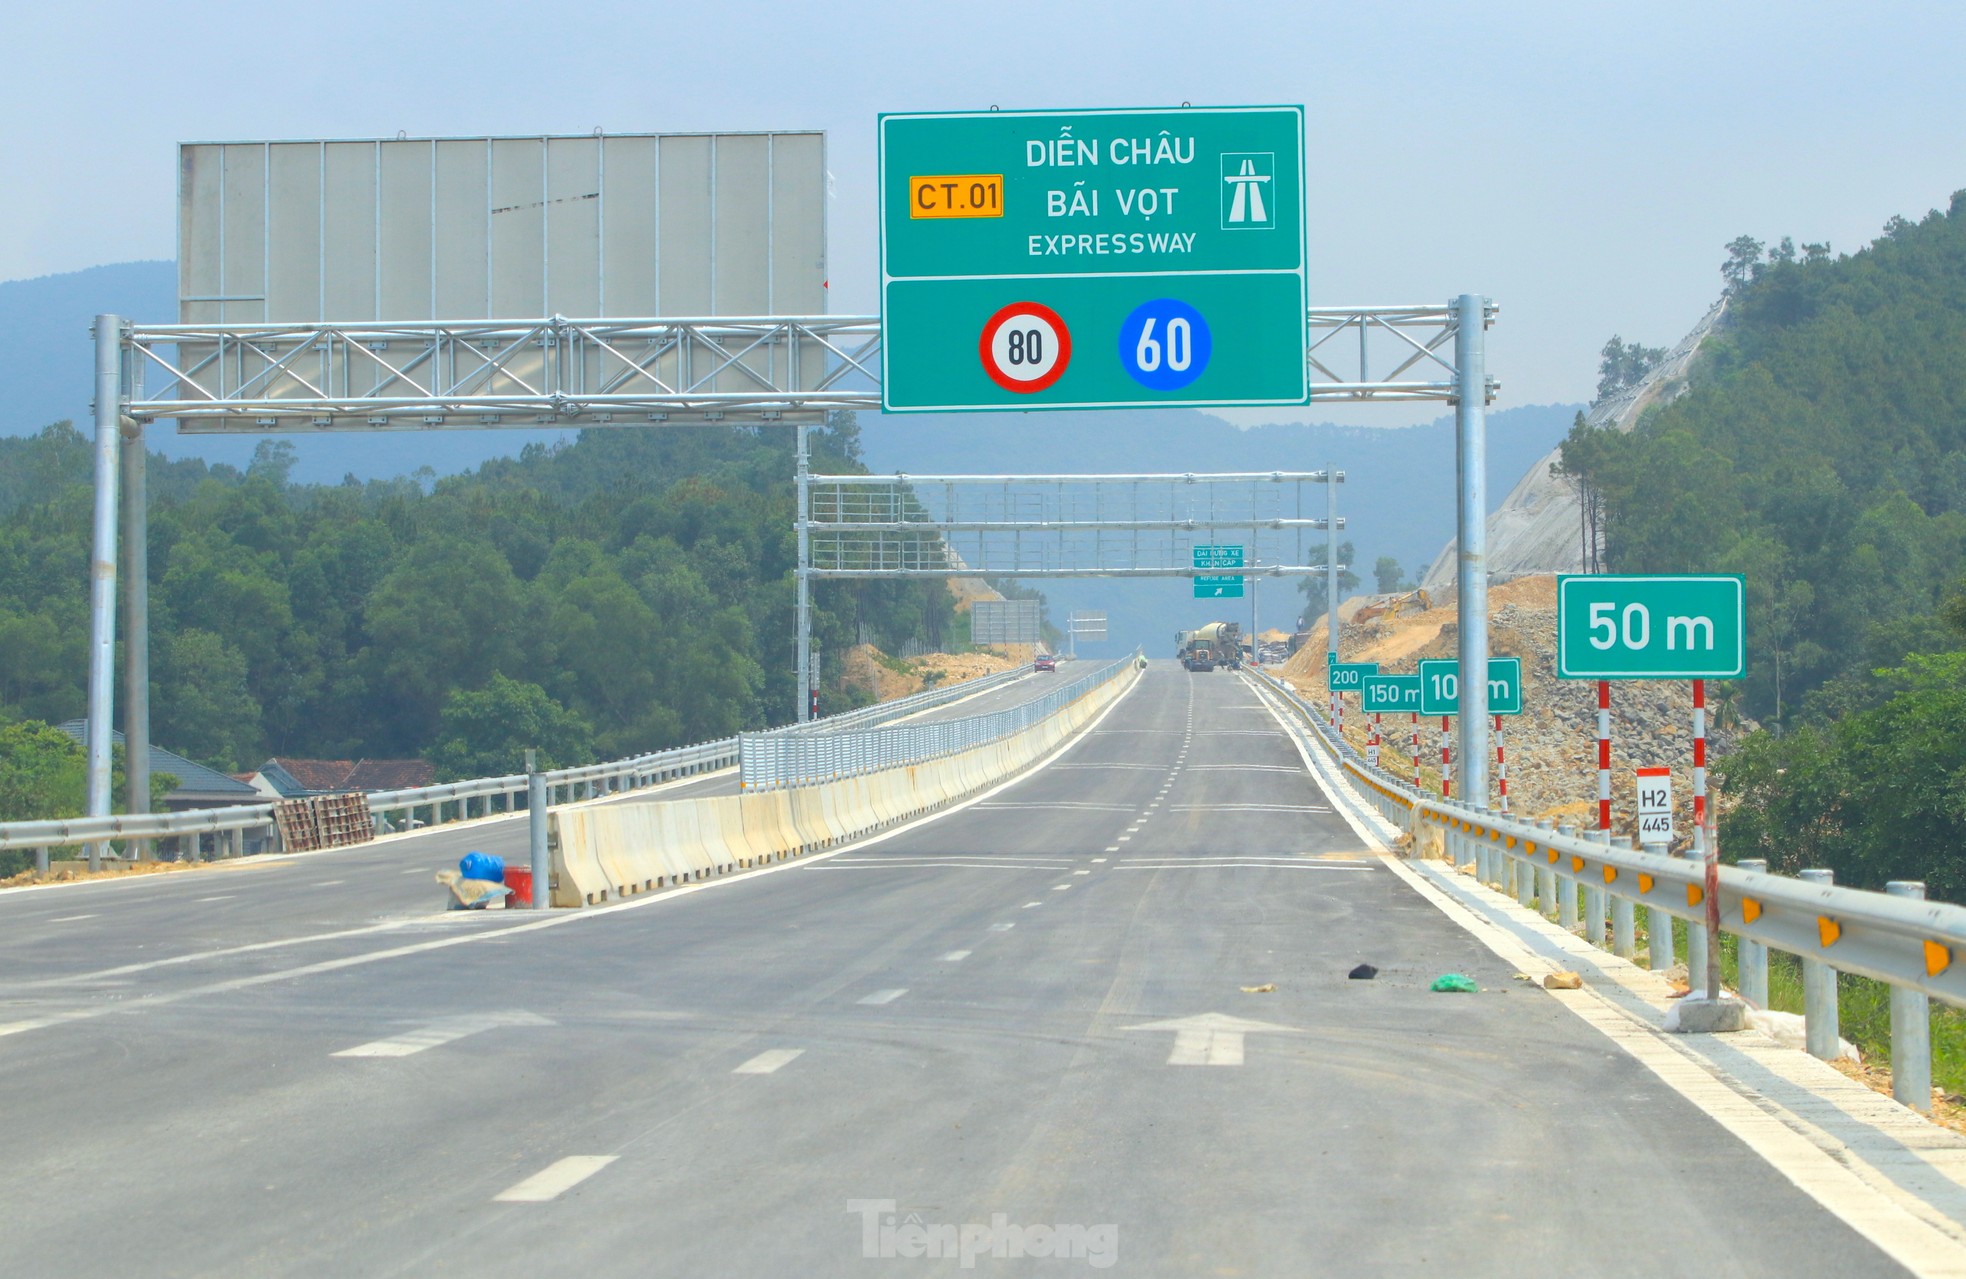 Toàn cảnh 30 km cao tốc Diễn Châu - Bãi Vọt trước ngày thông xe ảnh 21